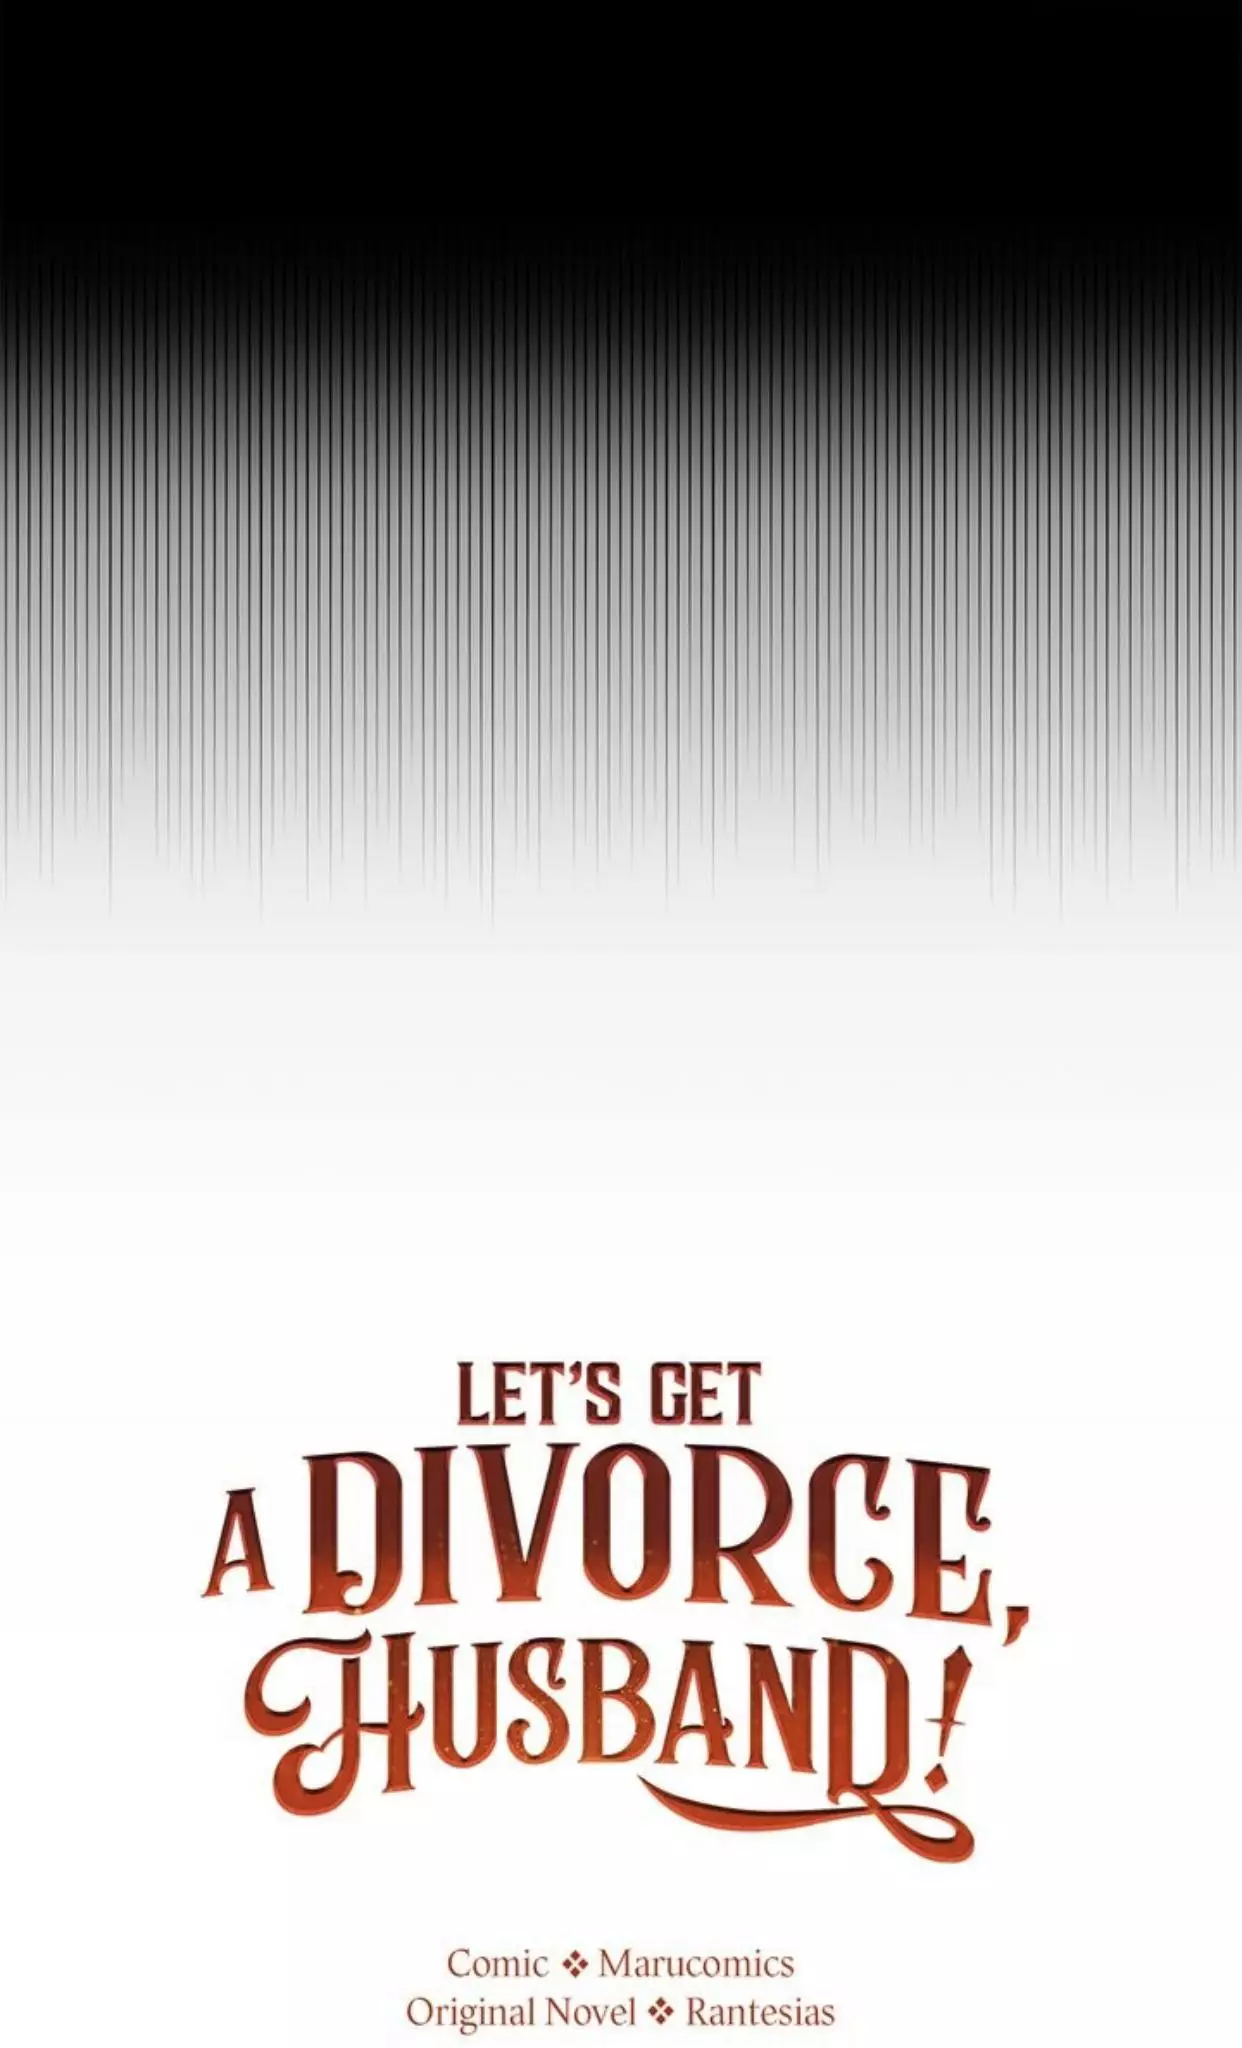 Divorce Me, Husband! - 56 page 36-0380f907